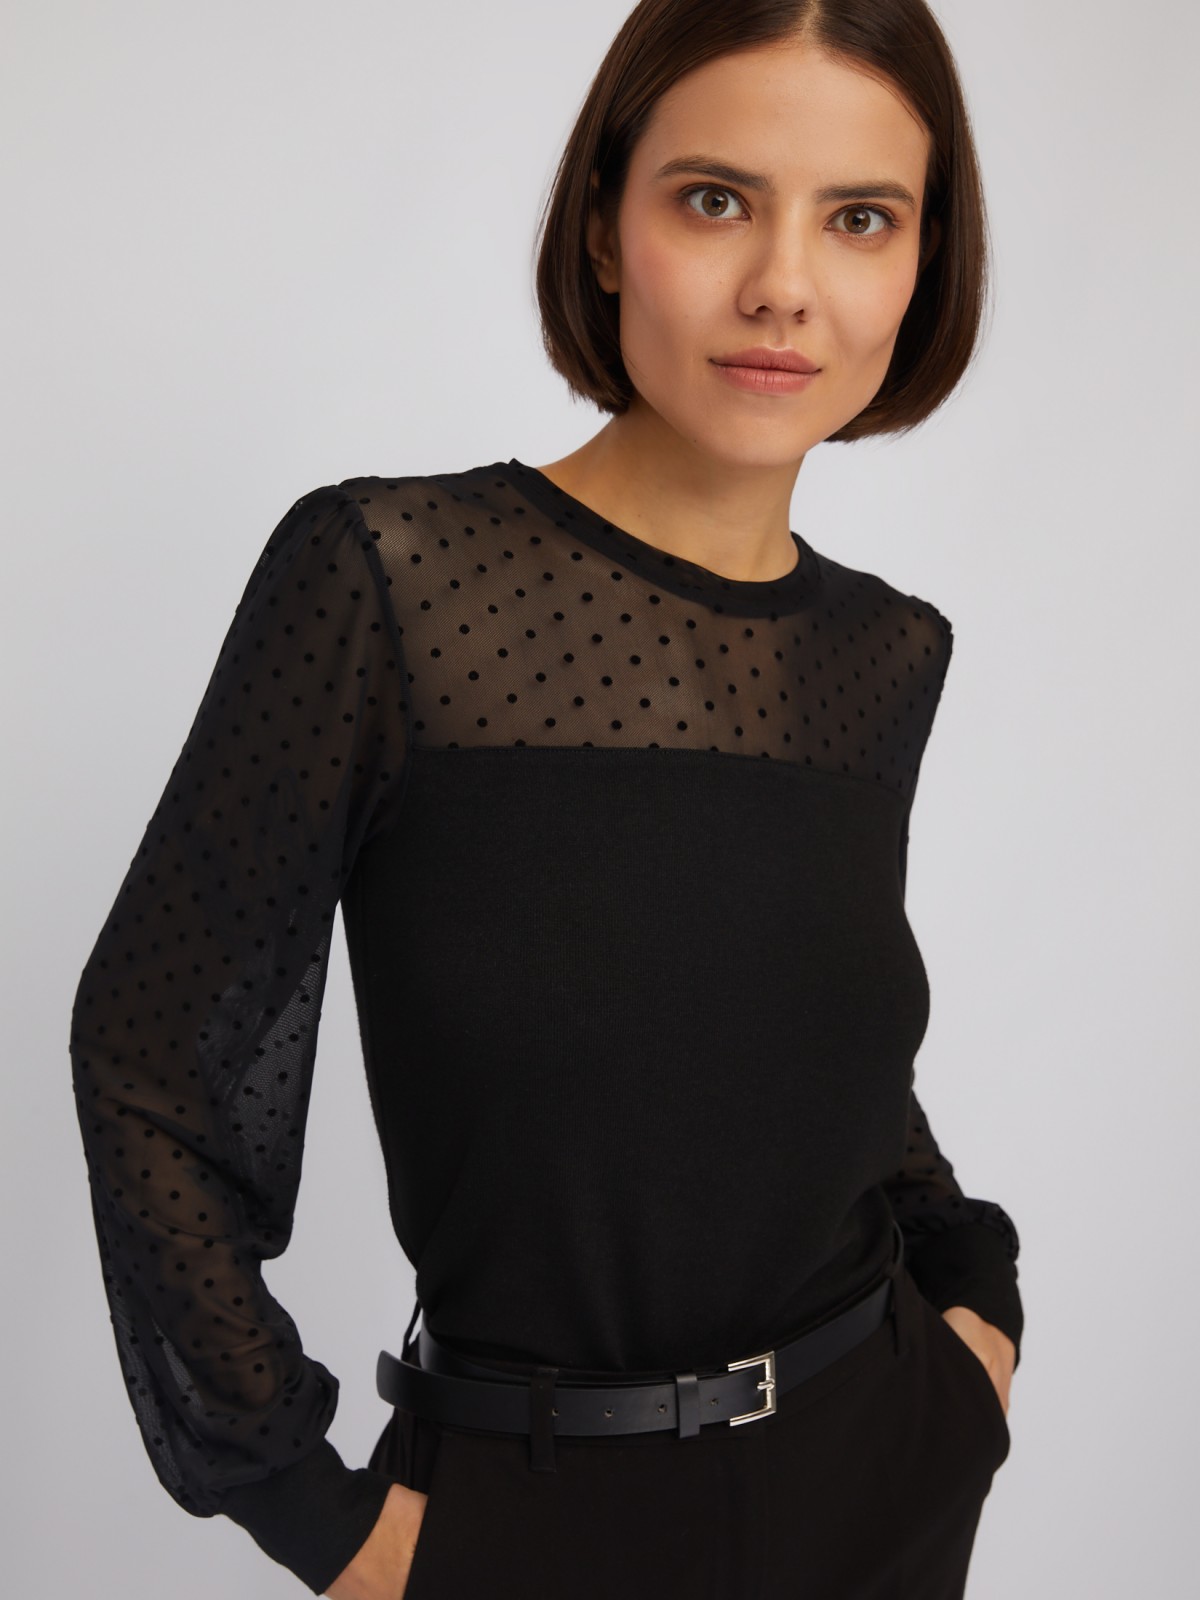 Трикотажный топ-блузка с акцентом на кокетке и рукавах zolla 024113159083, цвет черный, размер XS - фото 5